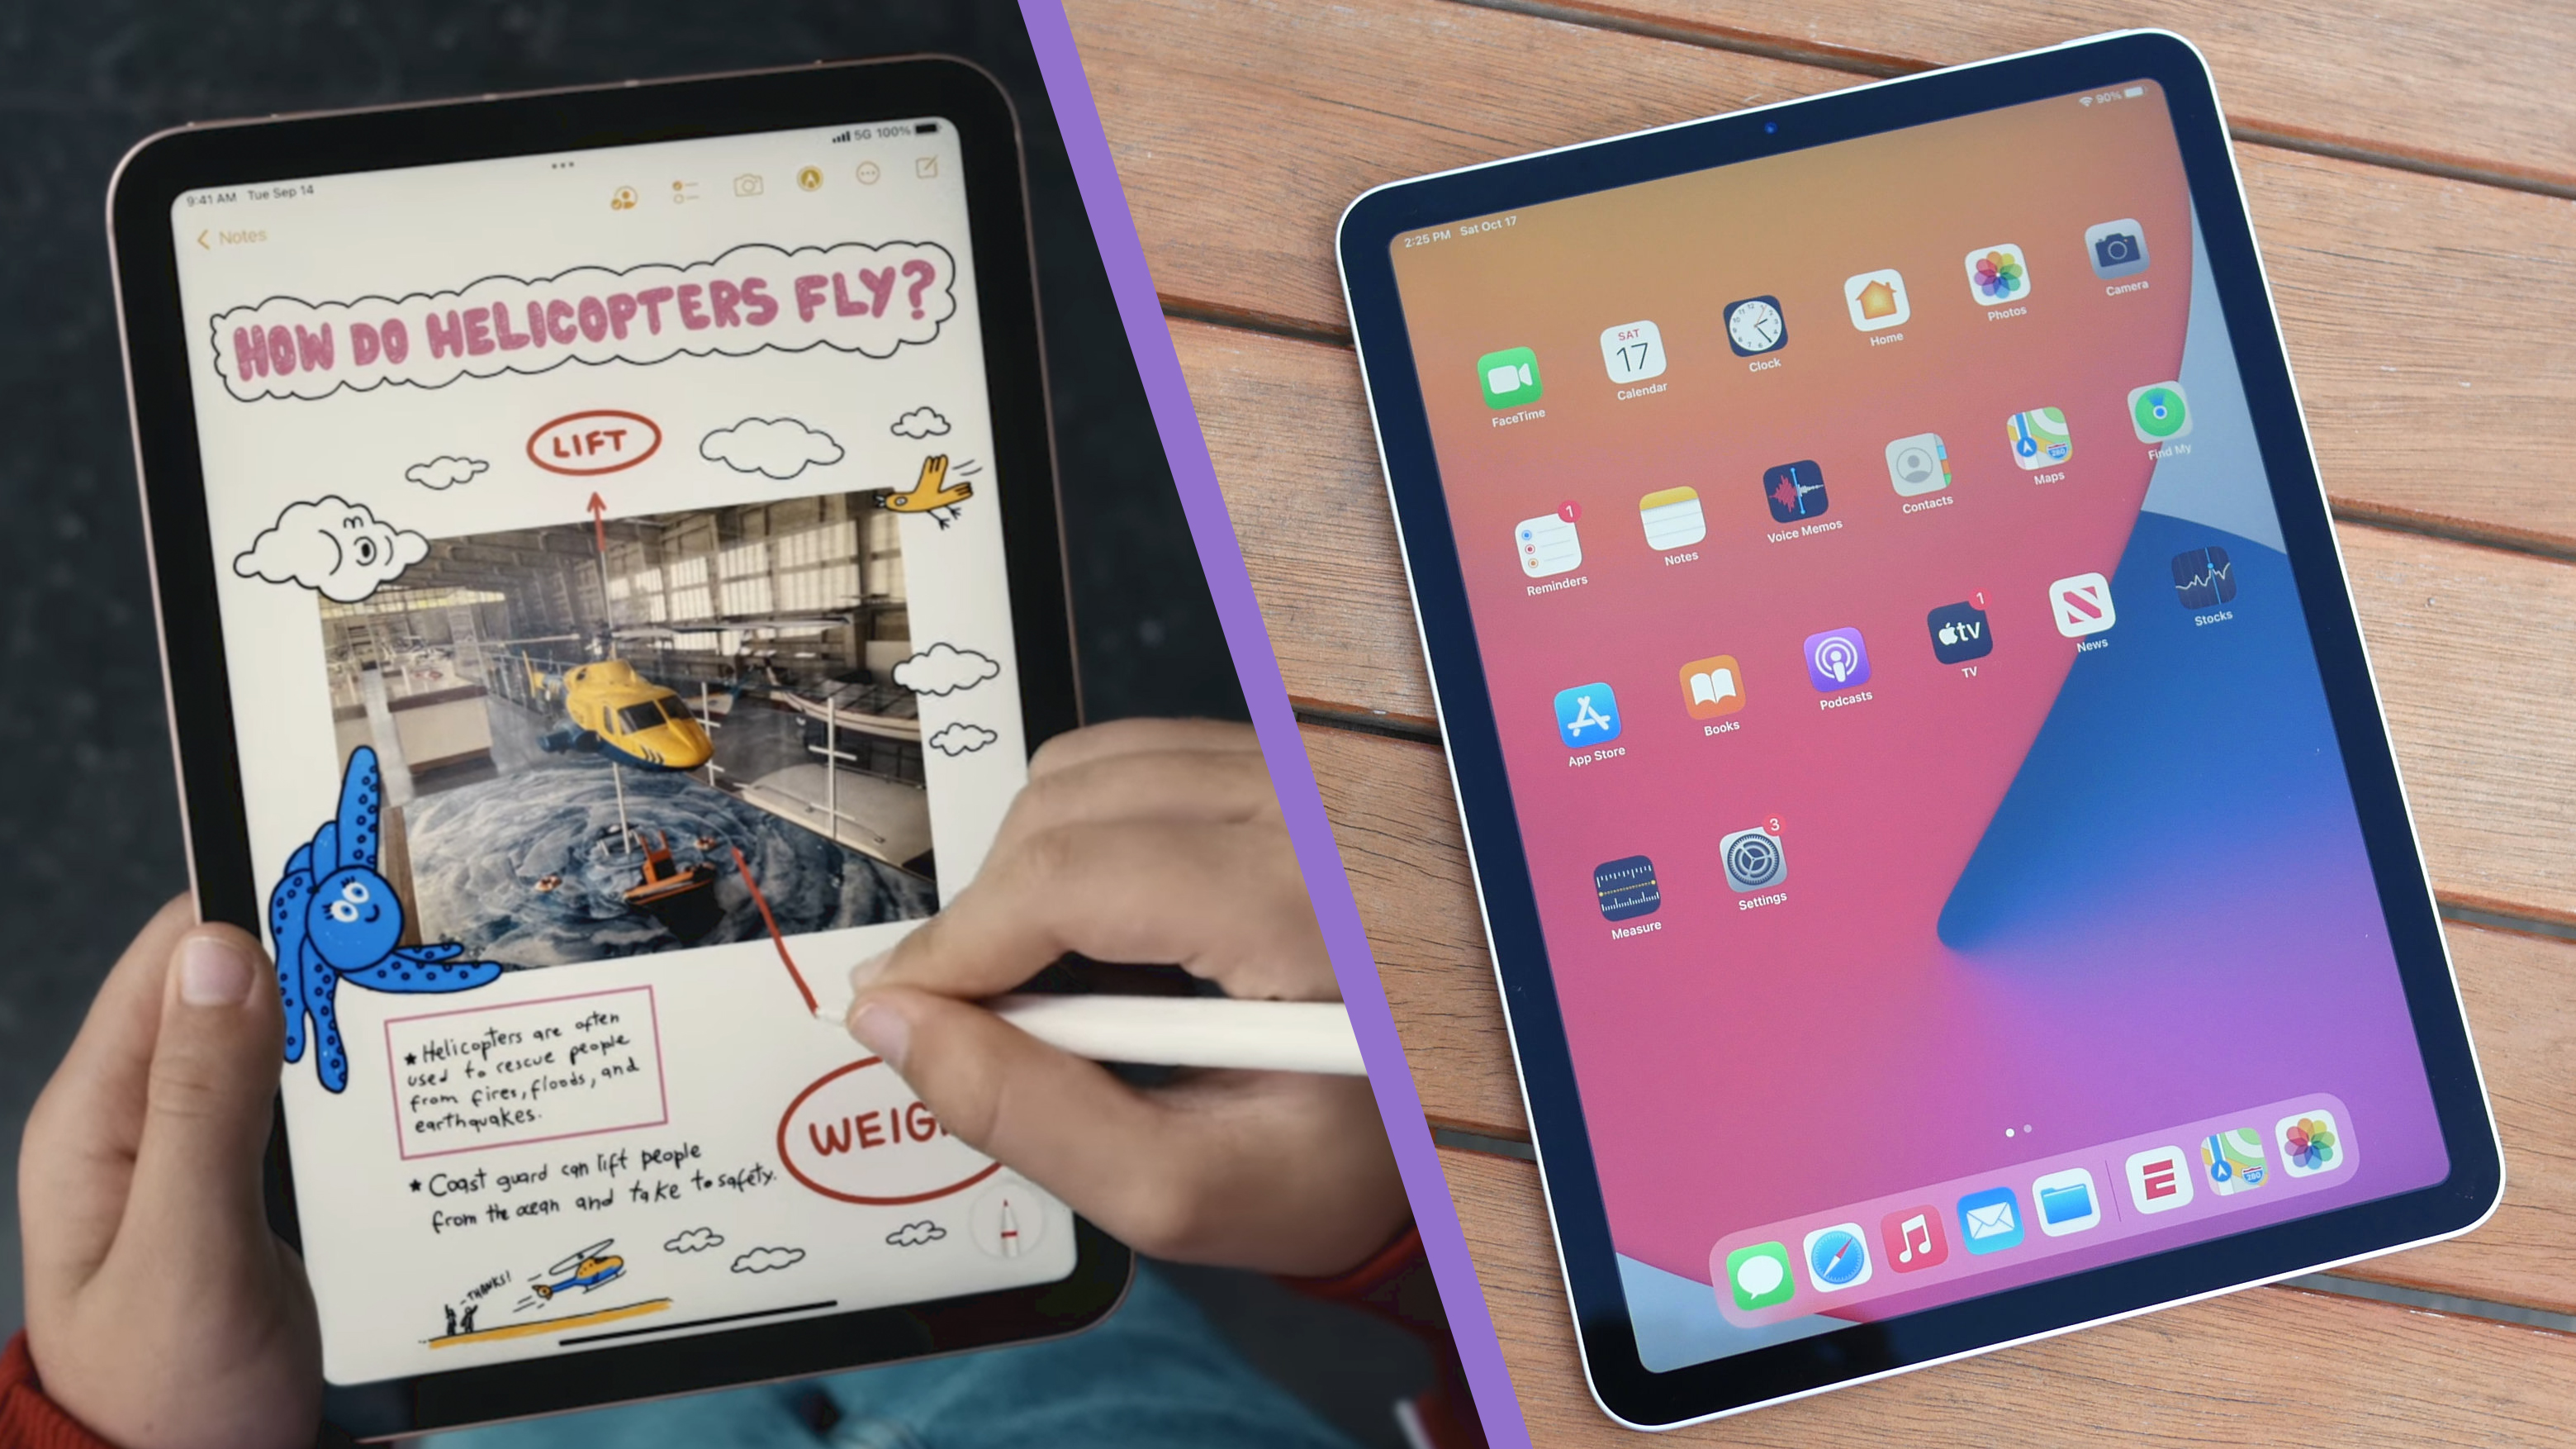 Original iPad mini versus iPad mini 6 - how far we've come